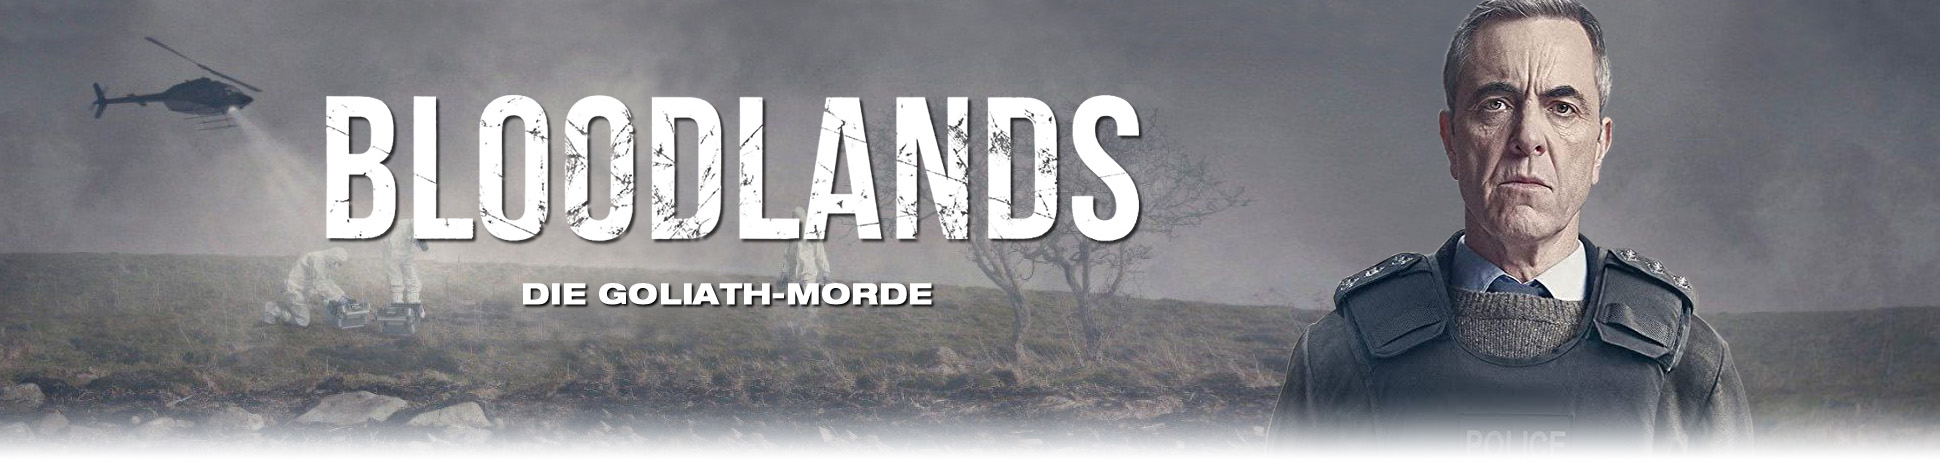 Bloodlands - Die Goliath-Morde